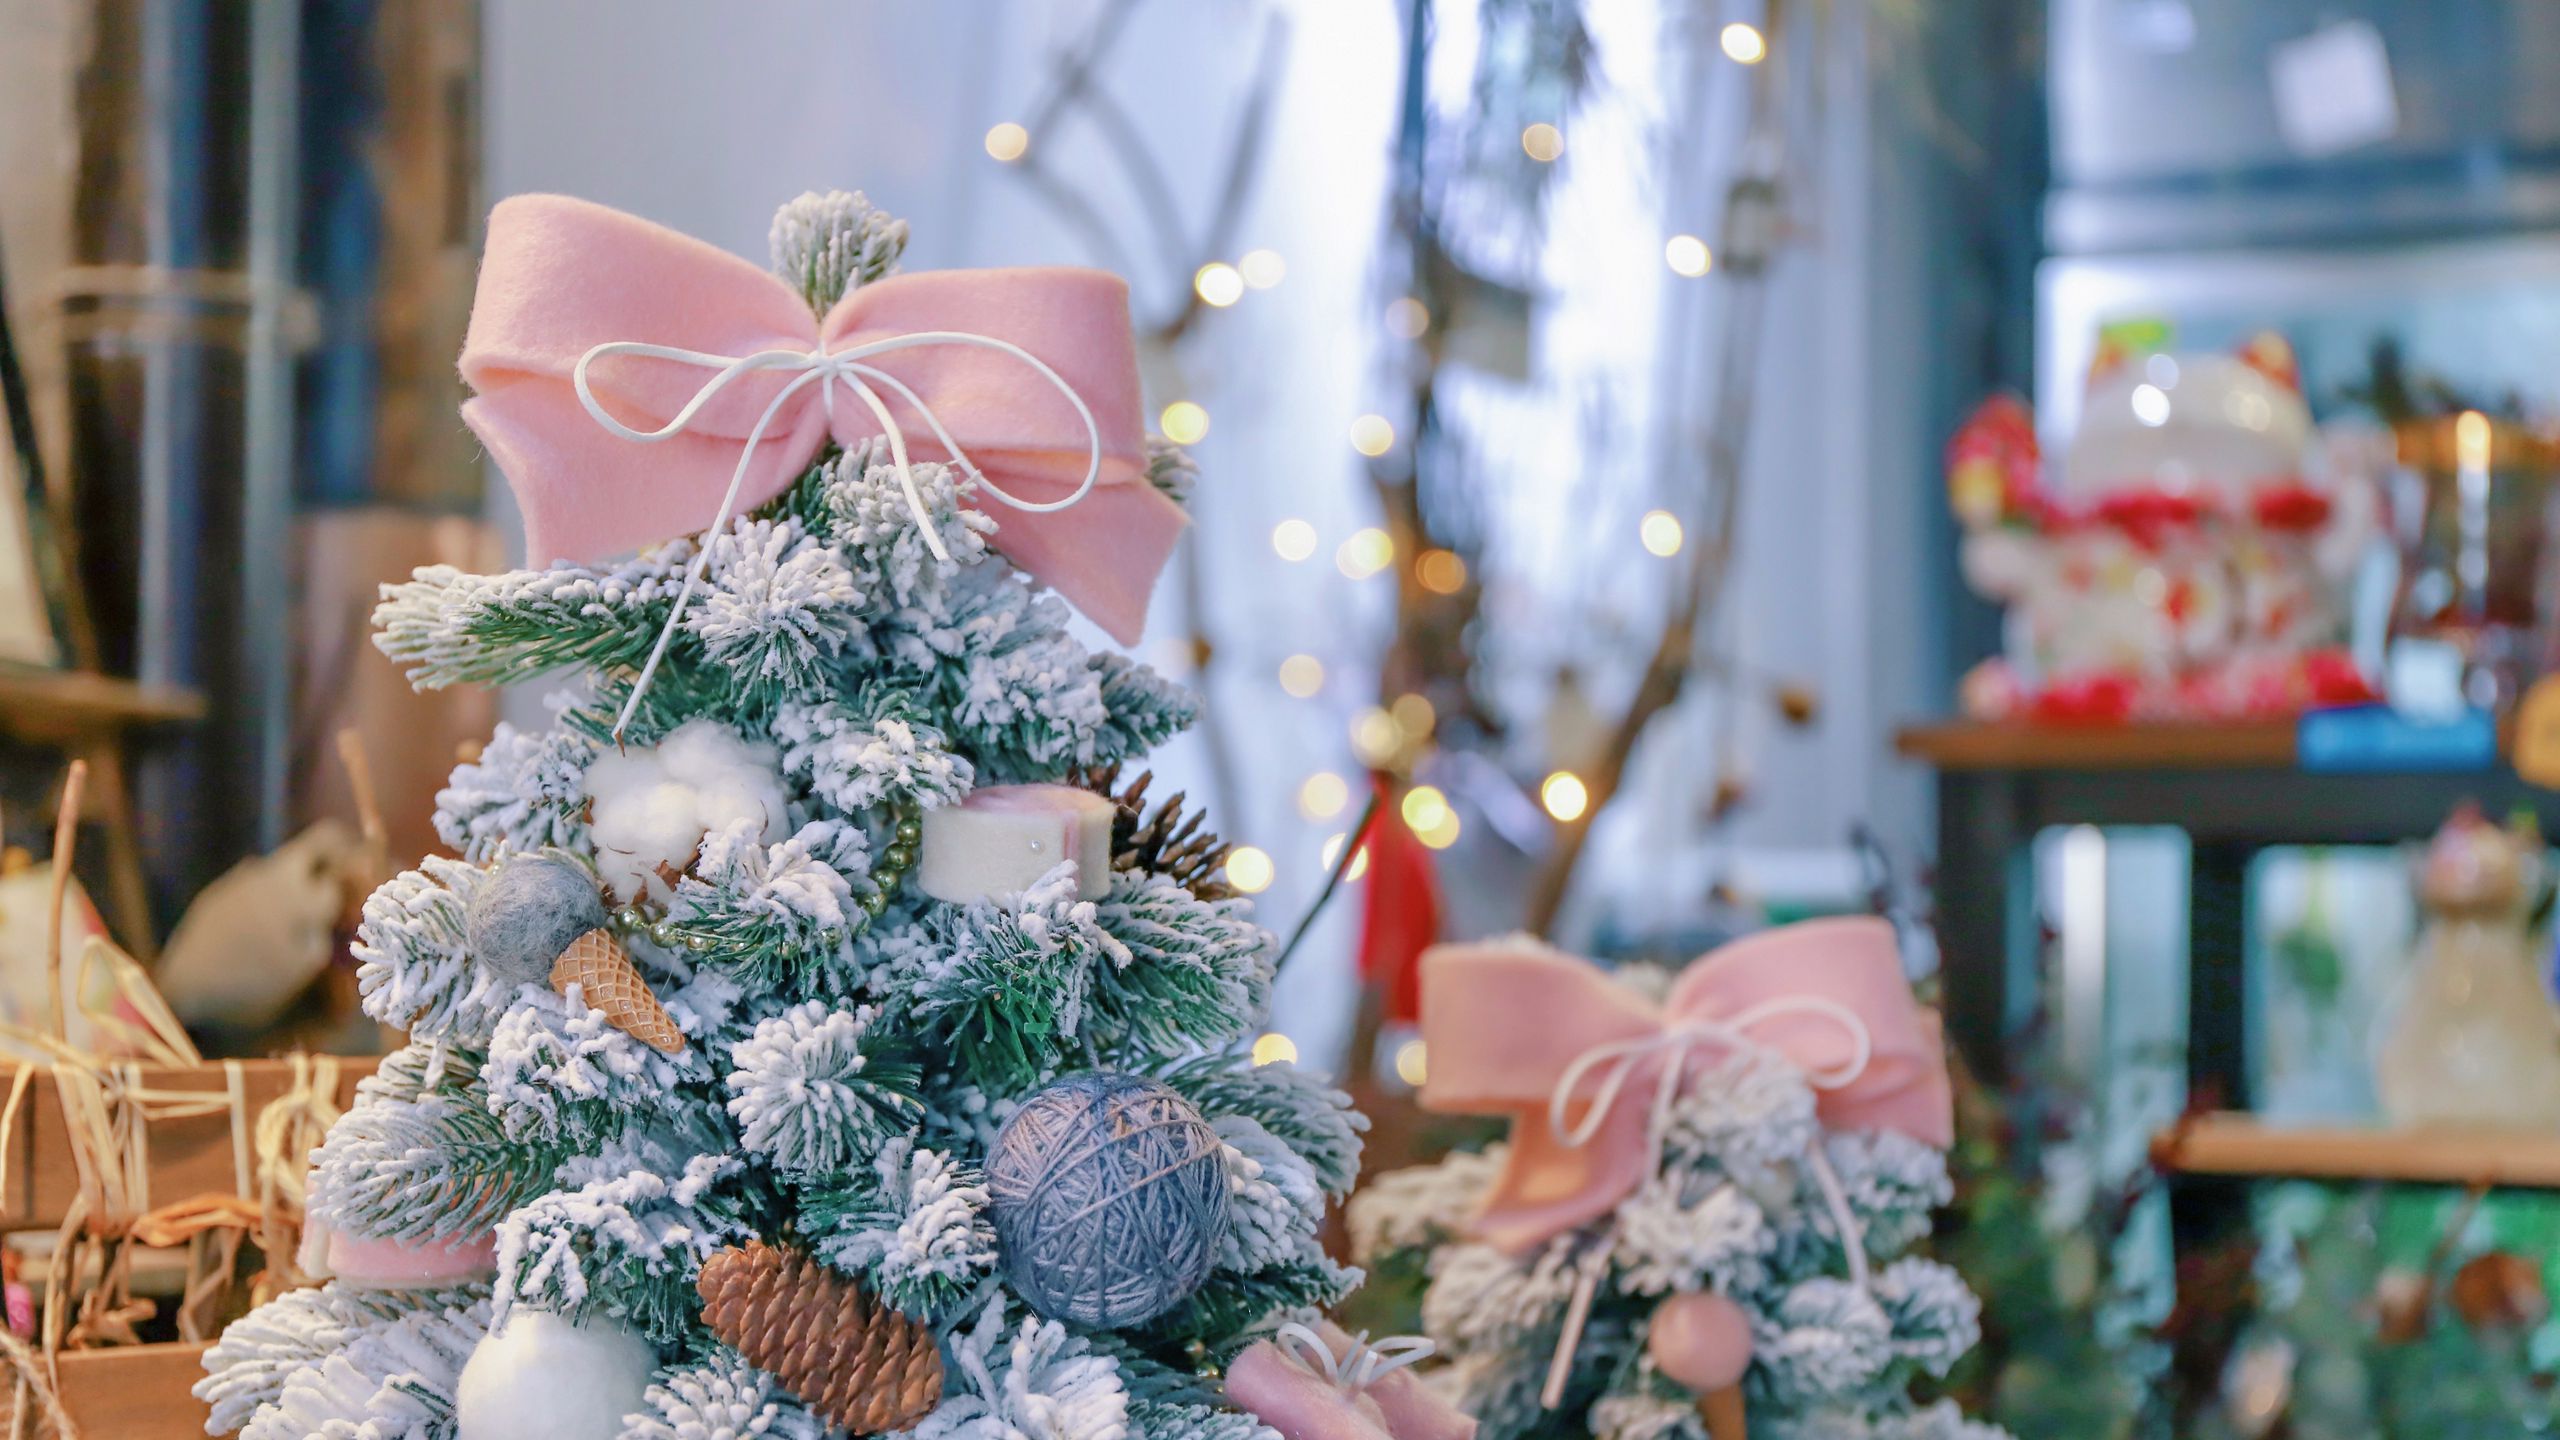 Khung cảnh của một cây thông Noel xinh đẹp luôn tạo cho chúng ta cảm hứng và niềm vui trong dịp Giáng sinh. Hãy cùng đắm mình trong không gian vô cùng ấm áp và tràn đầy tình yêu thương này. Hãy xem hình ảnh cây thông Noel và trải nghiệm những giây phút giản đơn nhất nhưng lại vô cùng đáng nhớ.